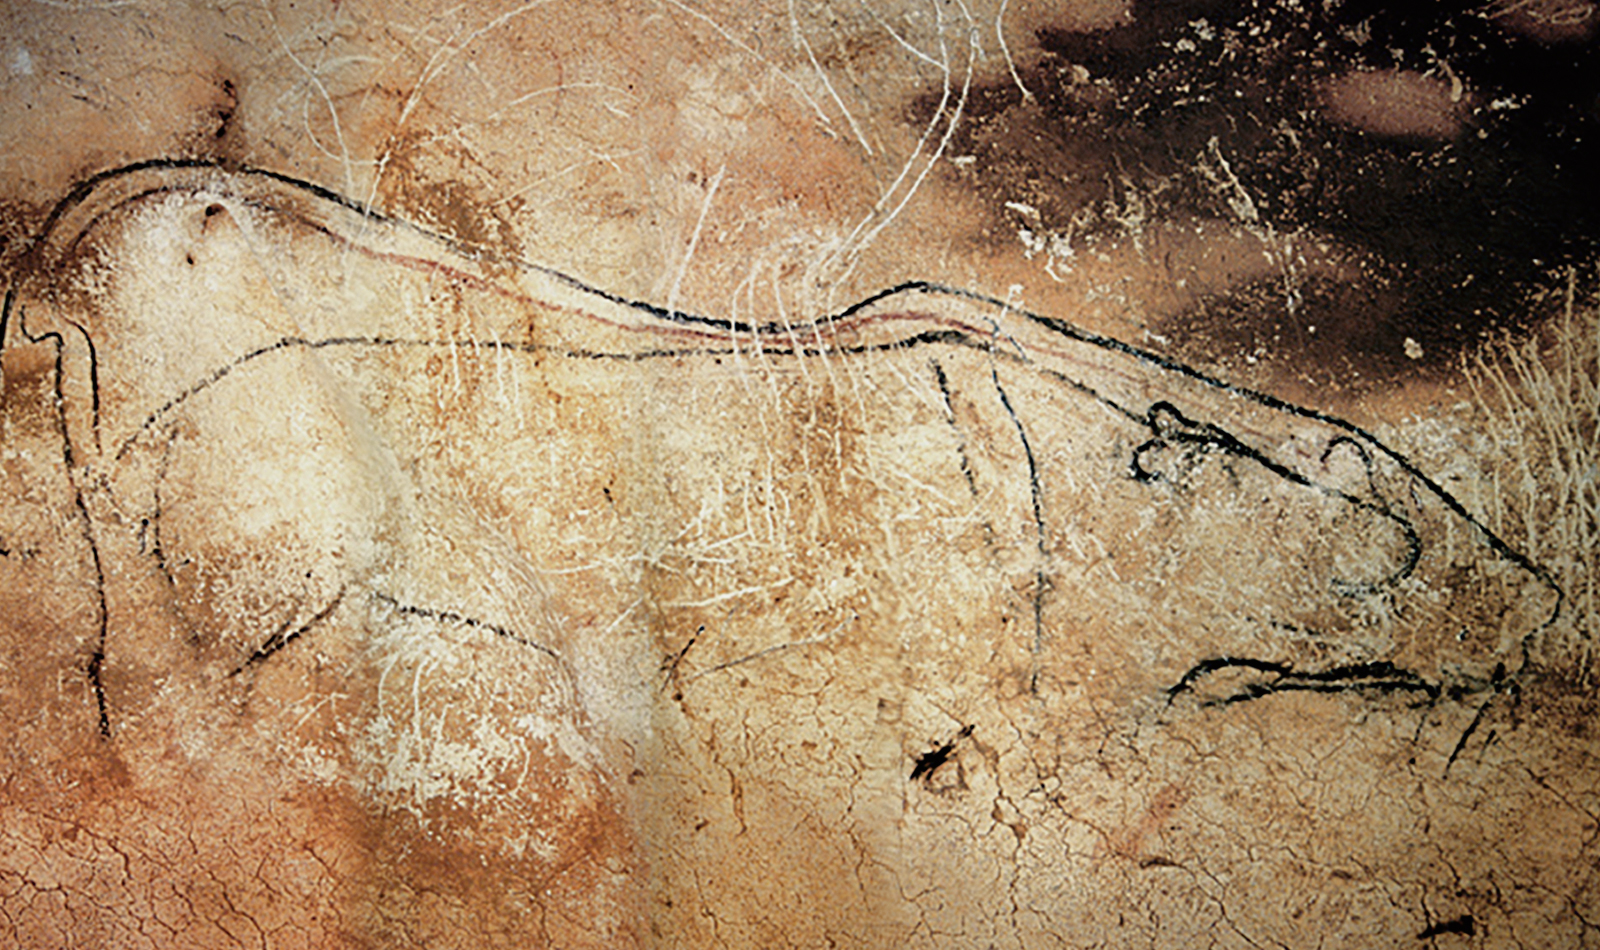 Lions Lion Chauvet Cave Paintings Rock Art France Bradshaw Foundation